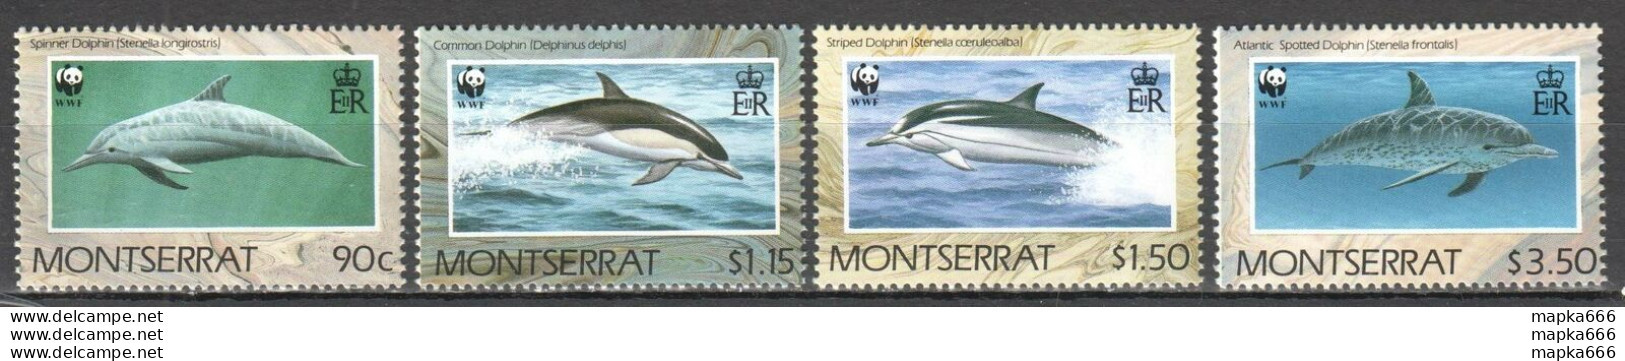 Tk015 1990 Montserrat Wwf Fauna Dolphins #706-09 Michel 16 Euro 1Set Mnh - Ungebraucht